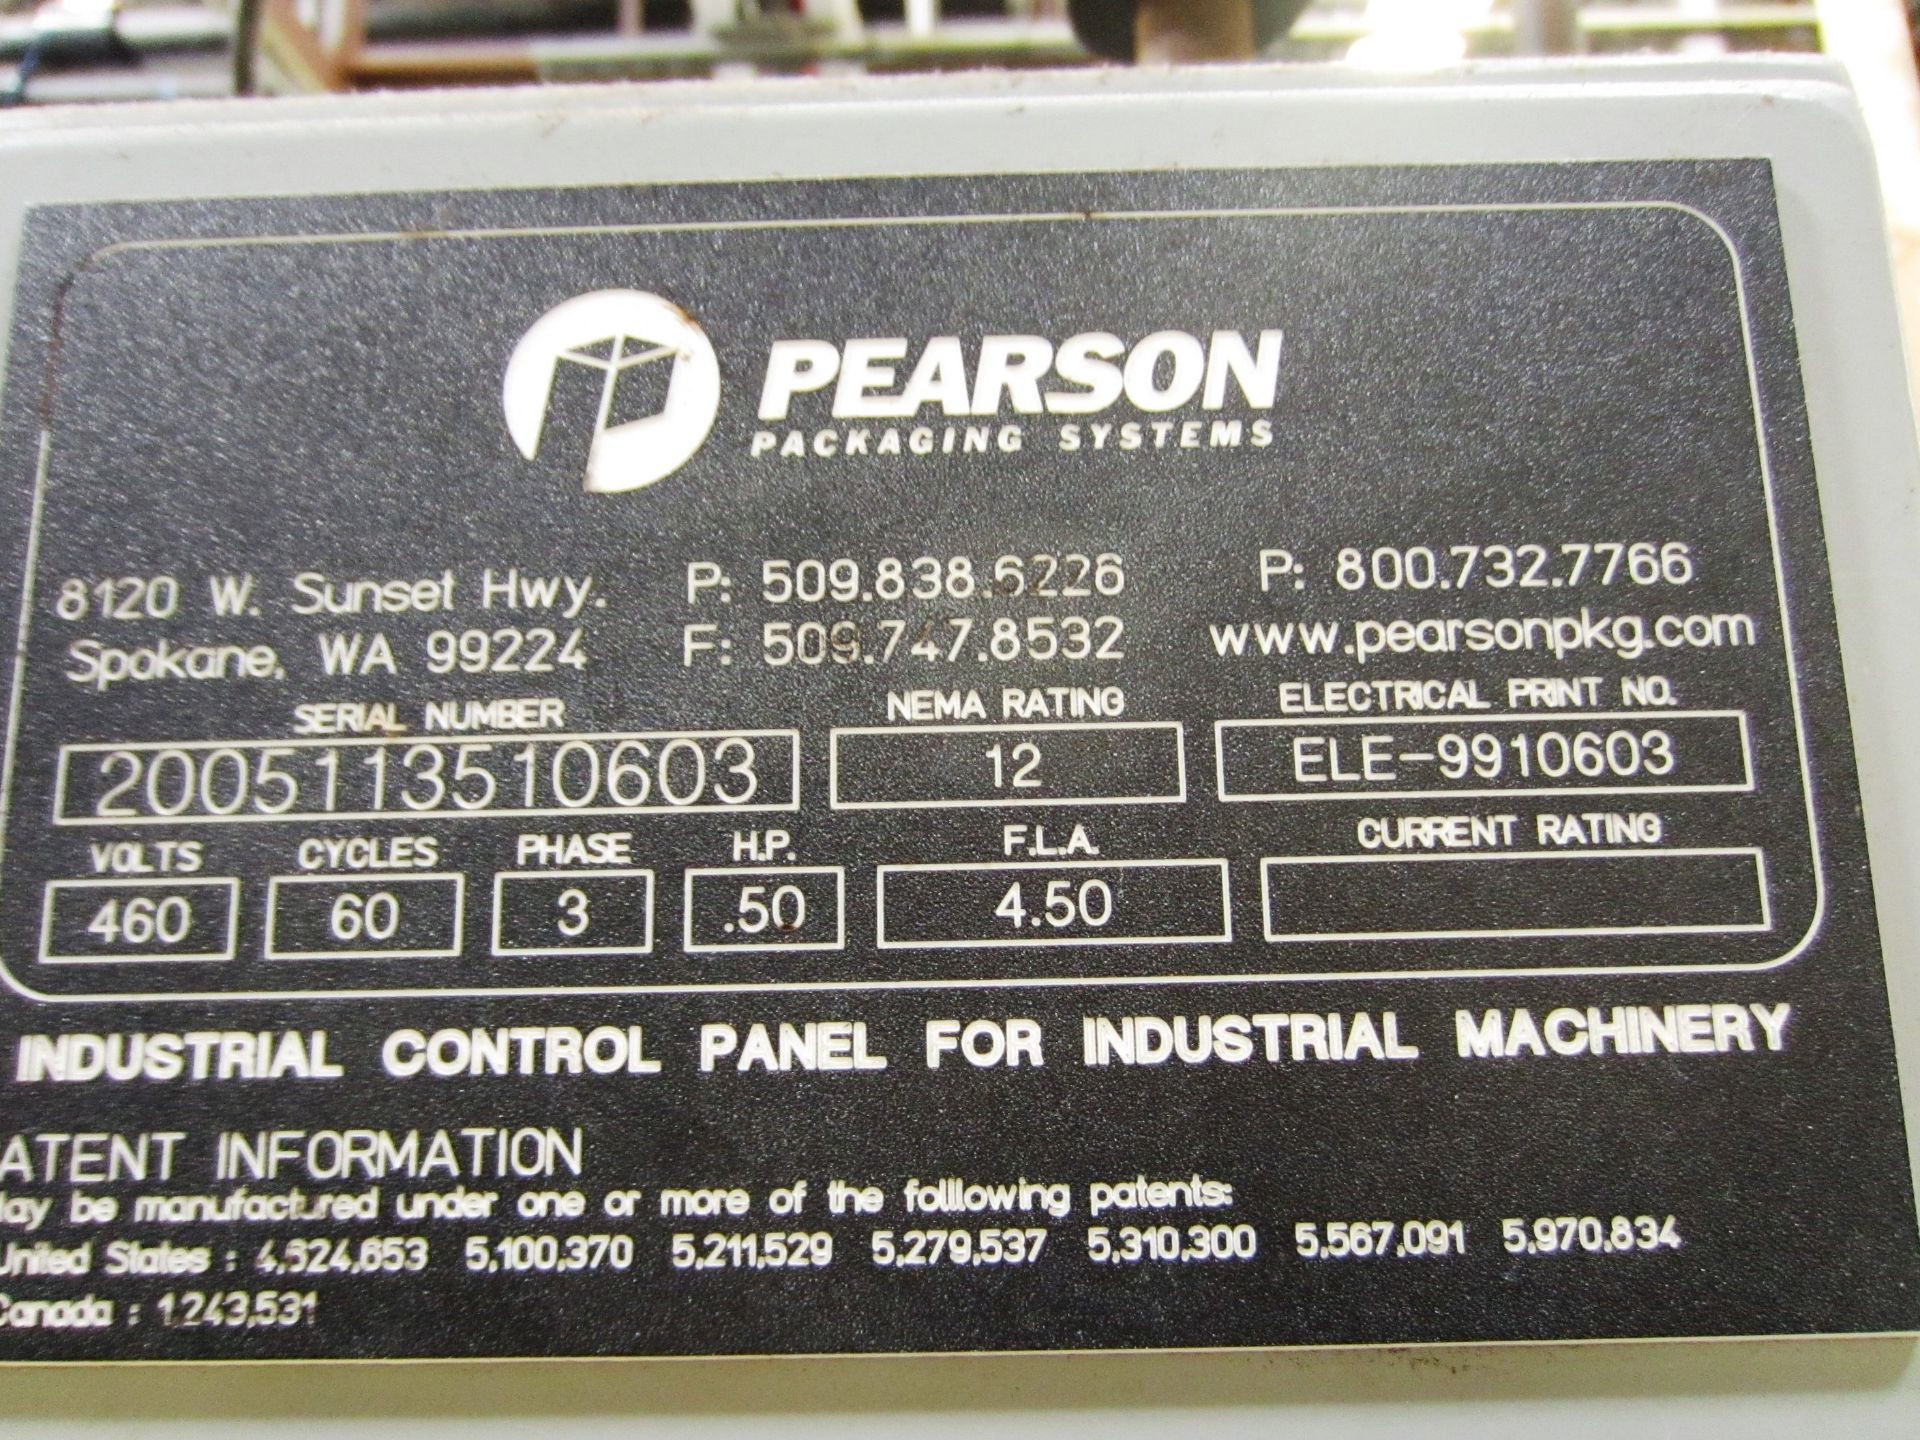 2005 Pearson Model S1135 Carton Packer, 460V, 3ph, 60 Hz, 0.5 HP, S/N (Milton, DE) - Image 4 of 4